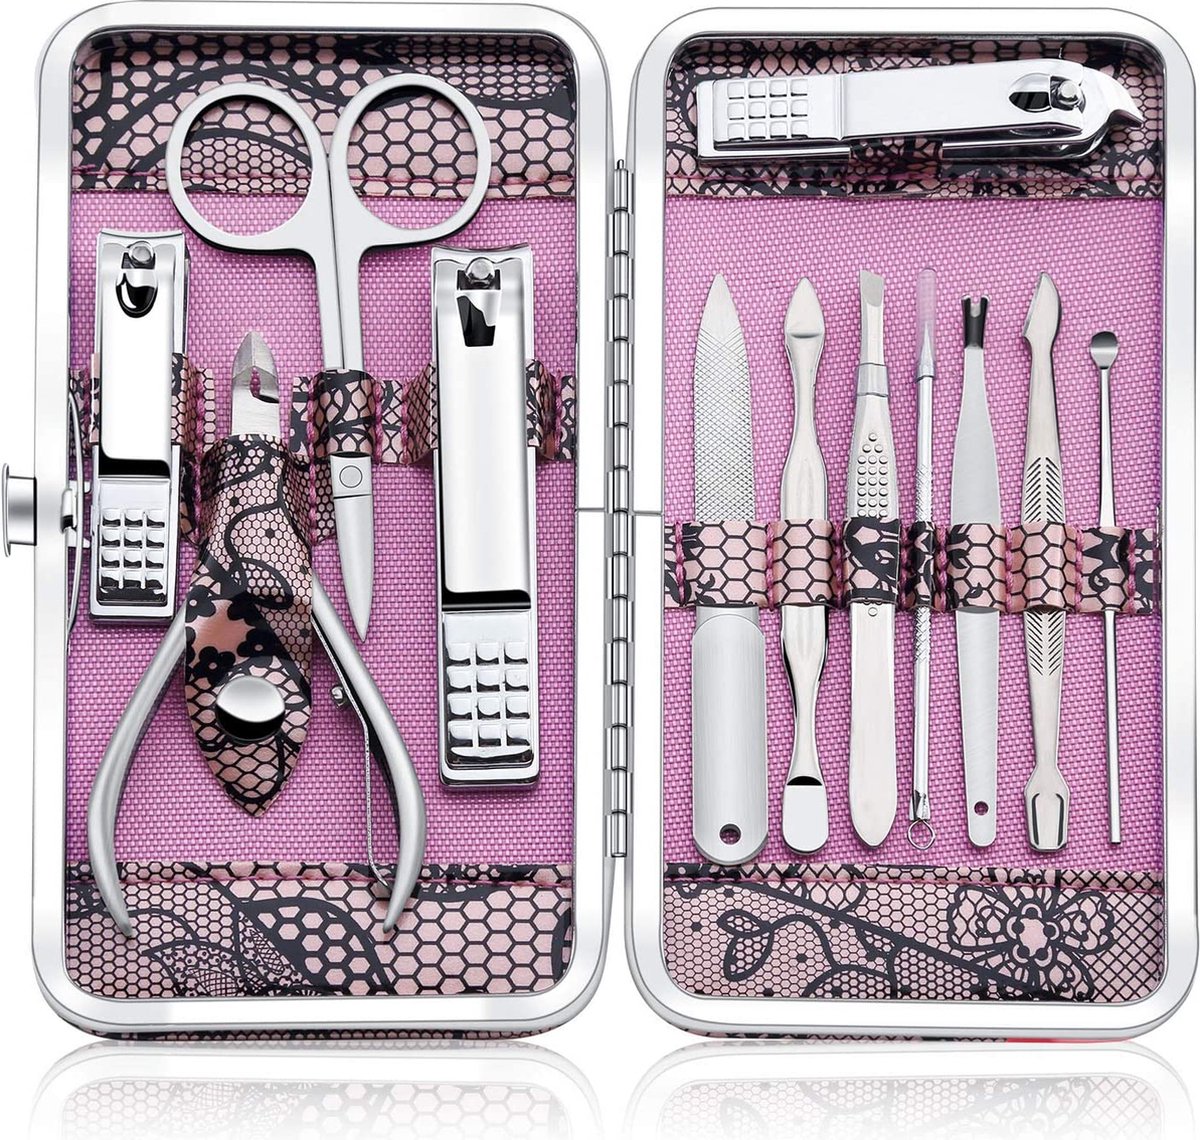 Manicureset Professionele roestvrijstalen nagelknipper-set - Nagelgereedschap van hoge kwaliteit Pedicure-set van 12 stuks - Reis- en verzorgingsset met luxe koffer (roze)